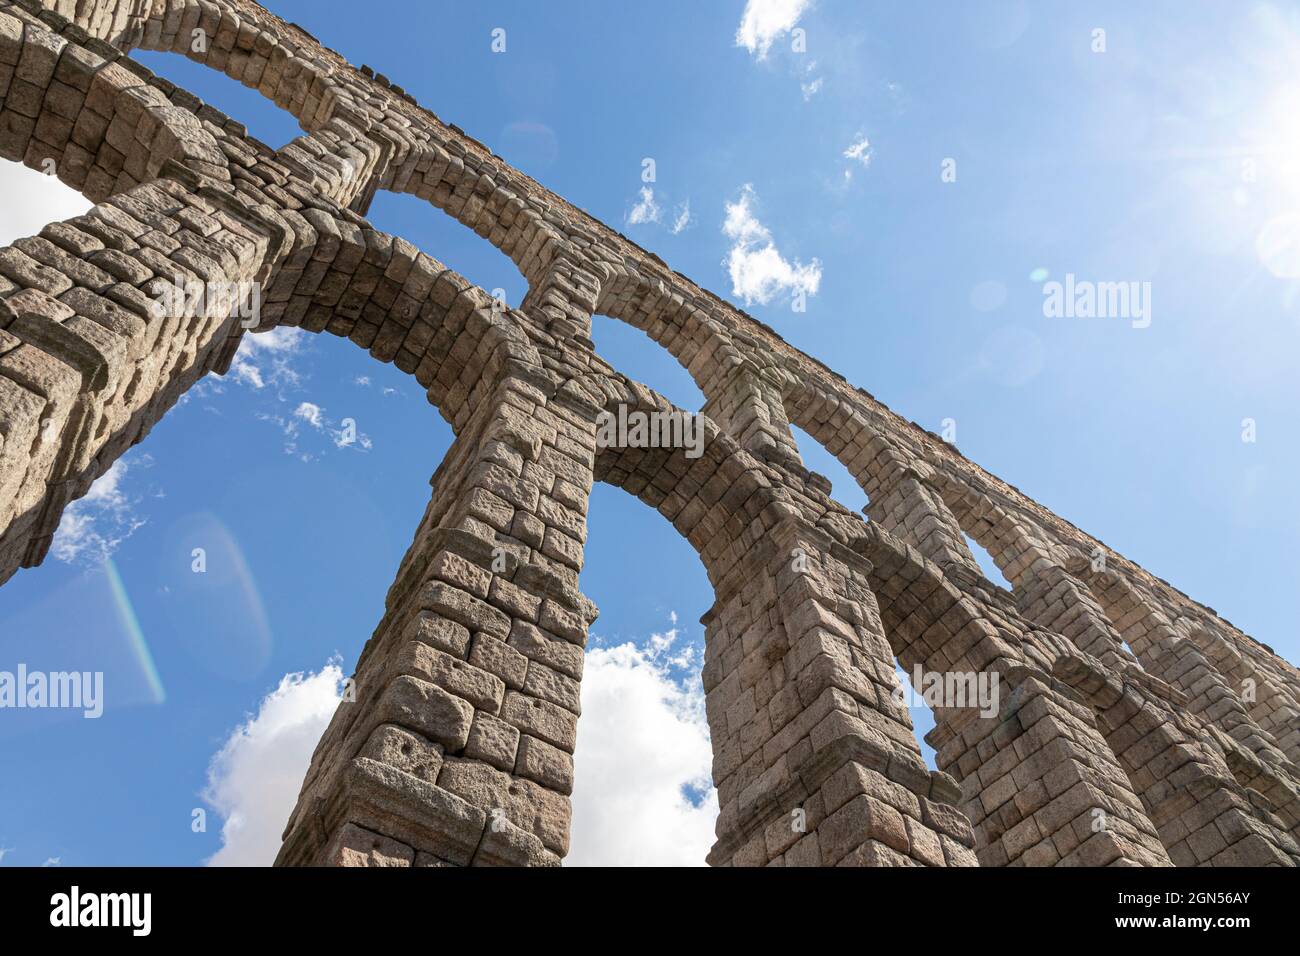 Ségovie, Espagne. L'Acueducto de Segovia, un aqueduc romain ou pont d'eau construit au 1er siècle après J.-C. Banque D'Images